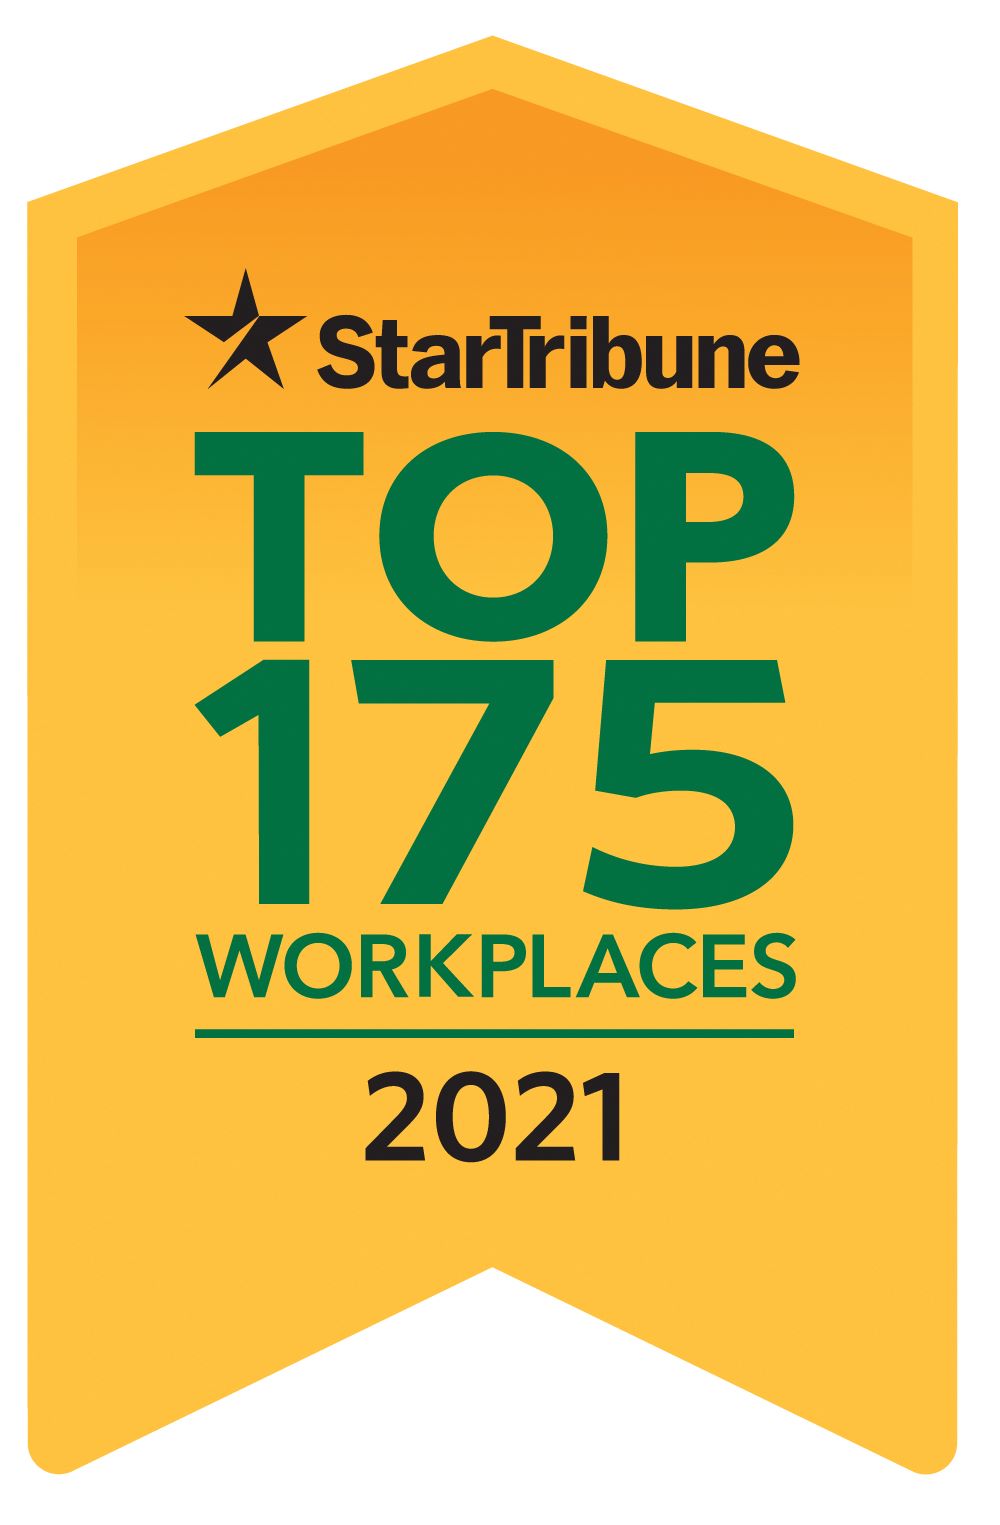 Star Tribune Top Workplace Award 2021